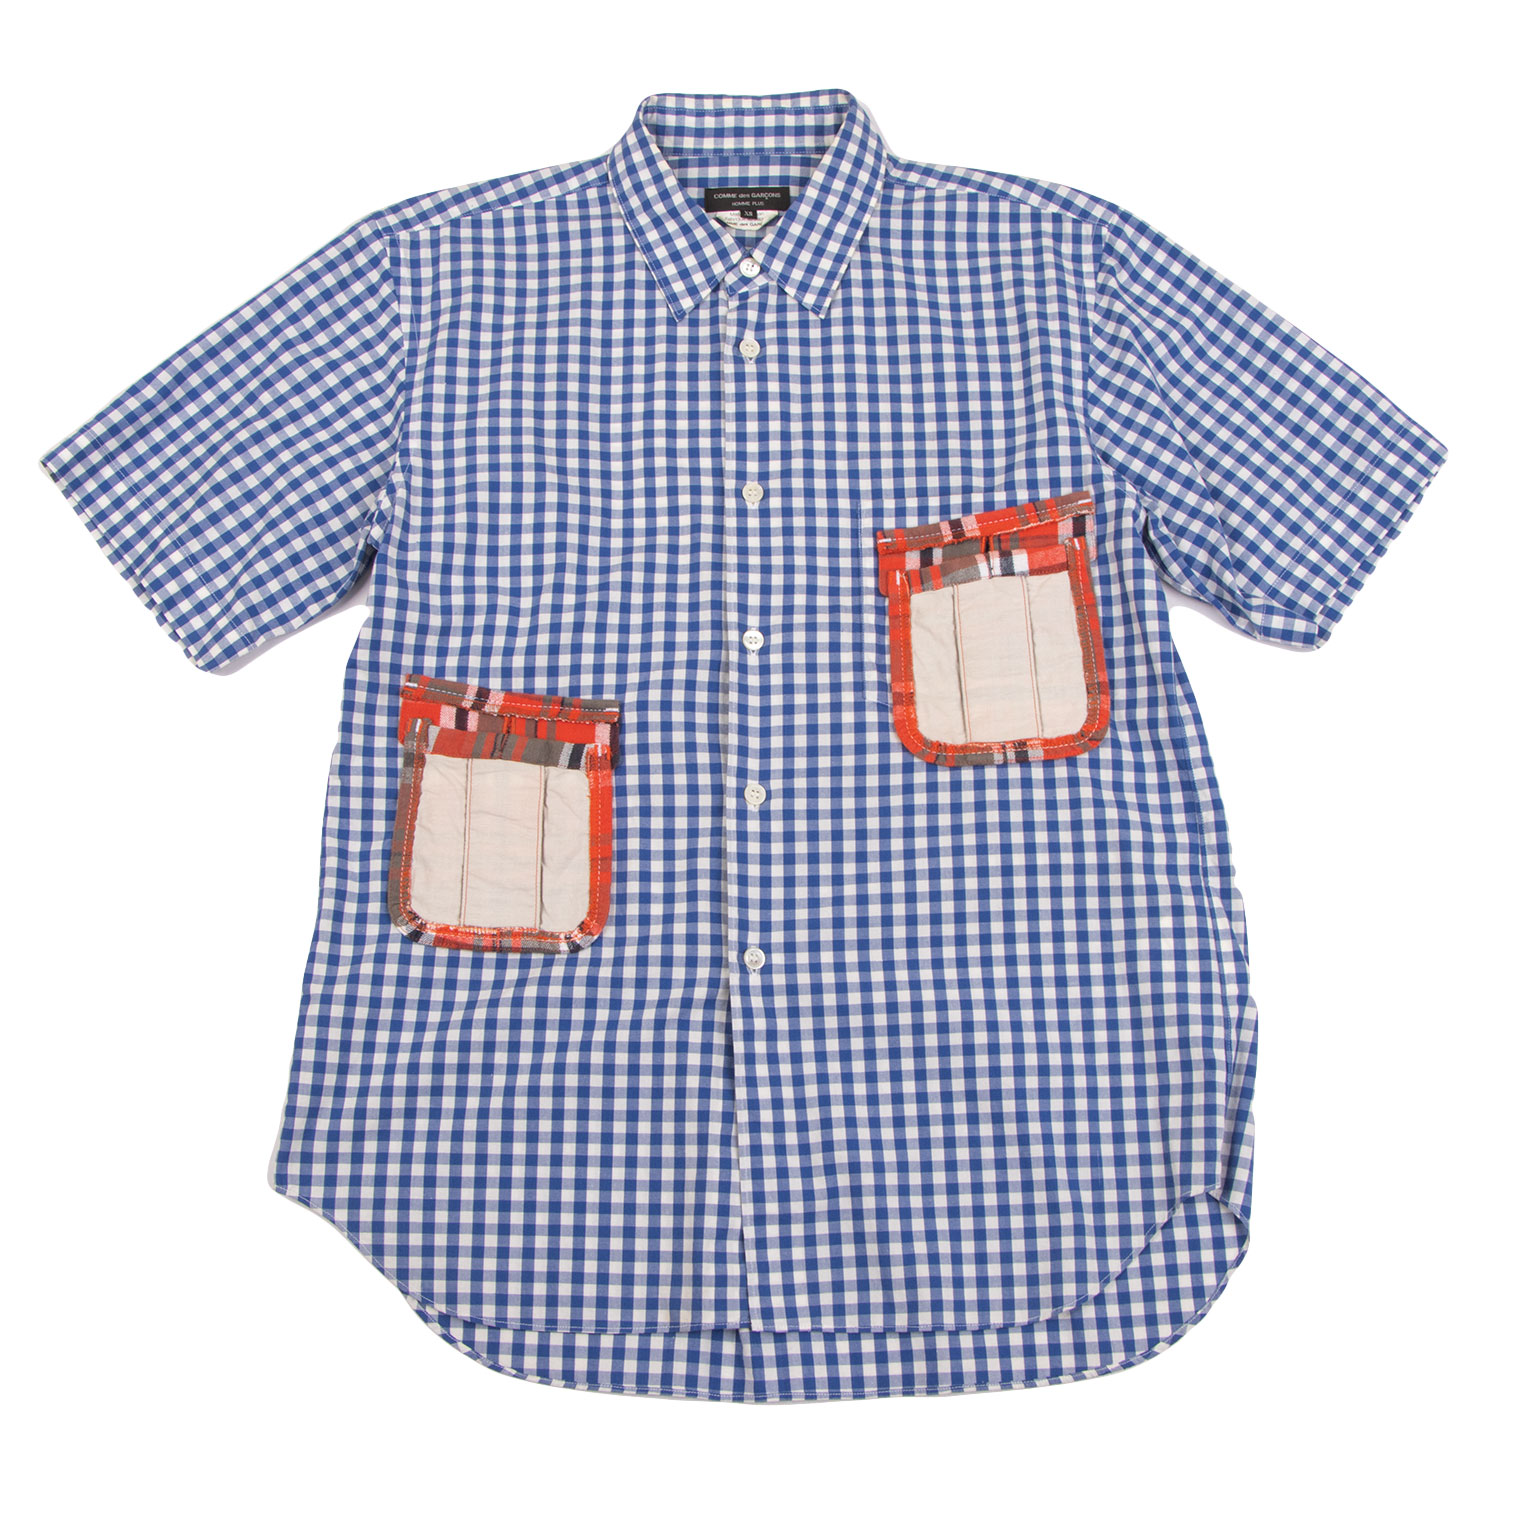 コムデギャルソン オムプリュスCOMME des GARCONS HOMME PLUS パッチポケット切替チェック半袖シャツ 青白赤XS